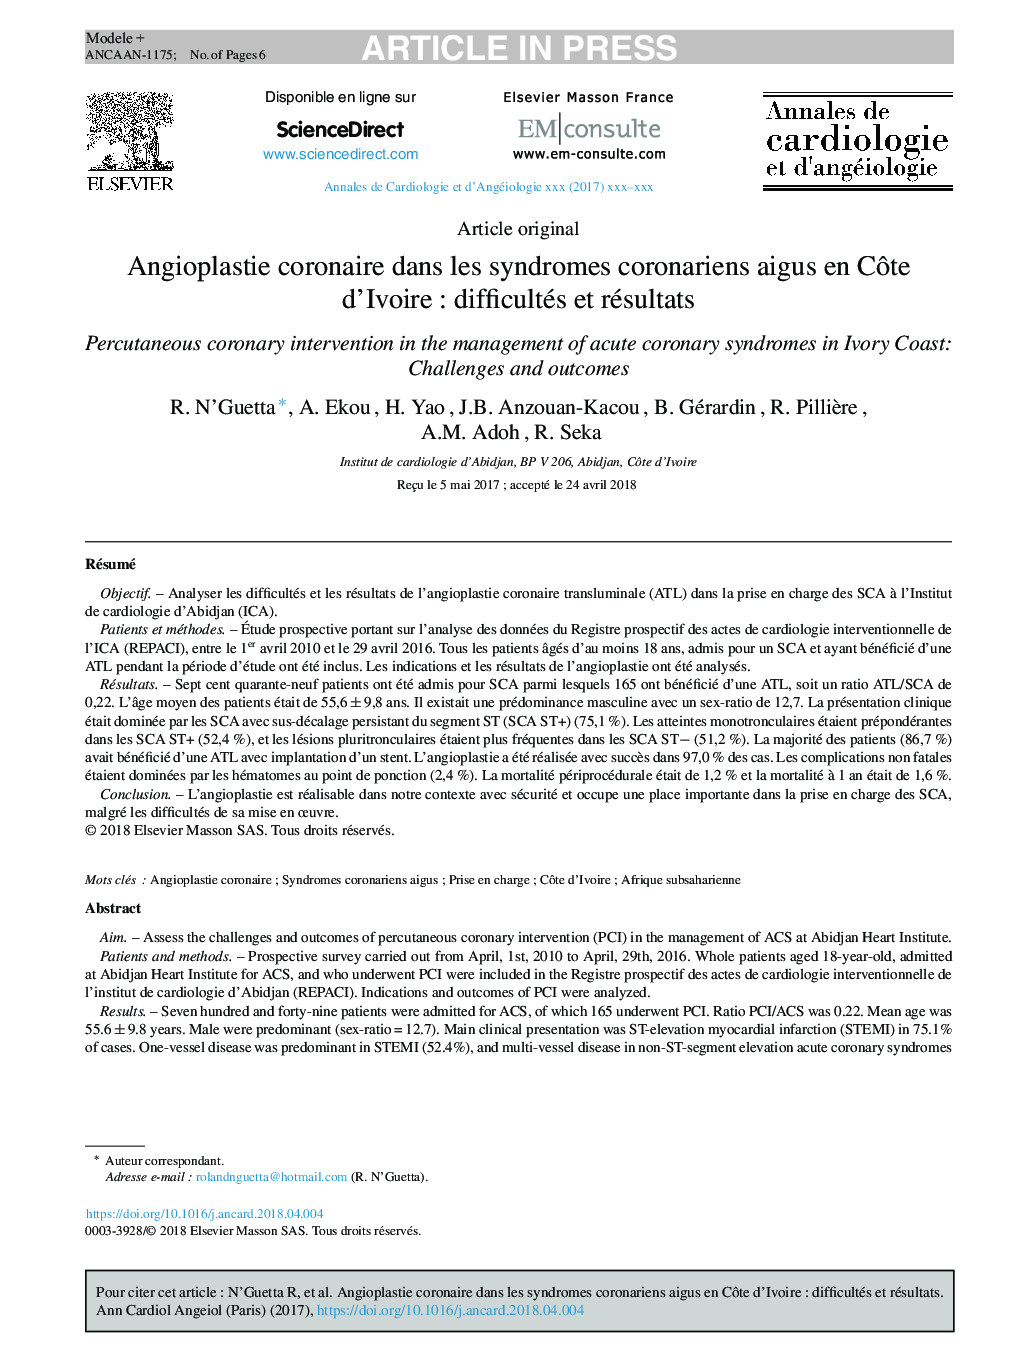 Angioplastie coronaire dans les syndromes coronariens aigus en CÃ´te d'IvoireÂ : difficultés et résultats